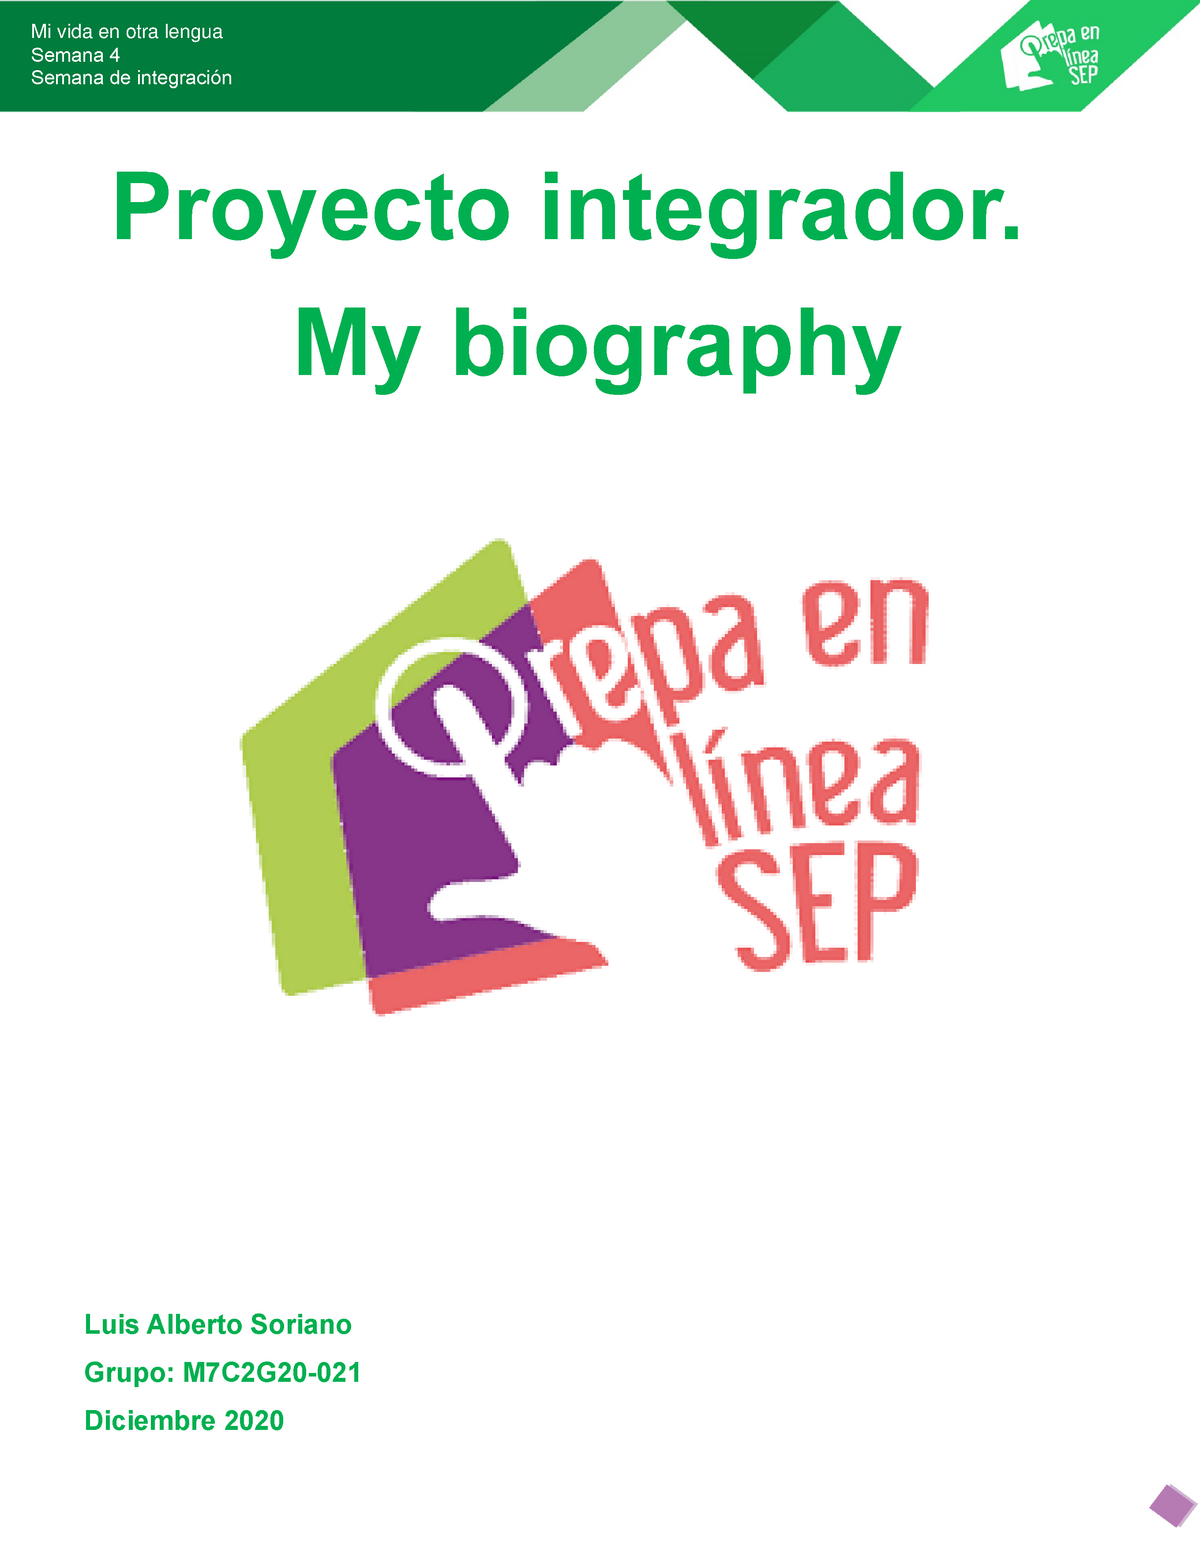 my biography proyecto integrador